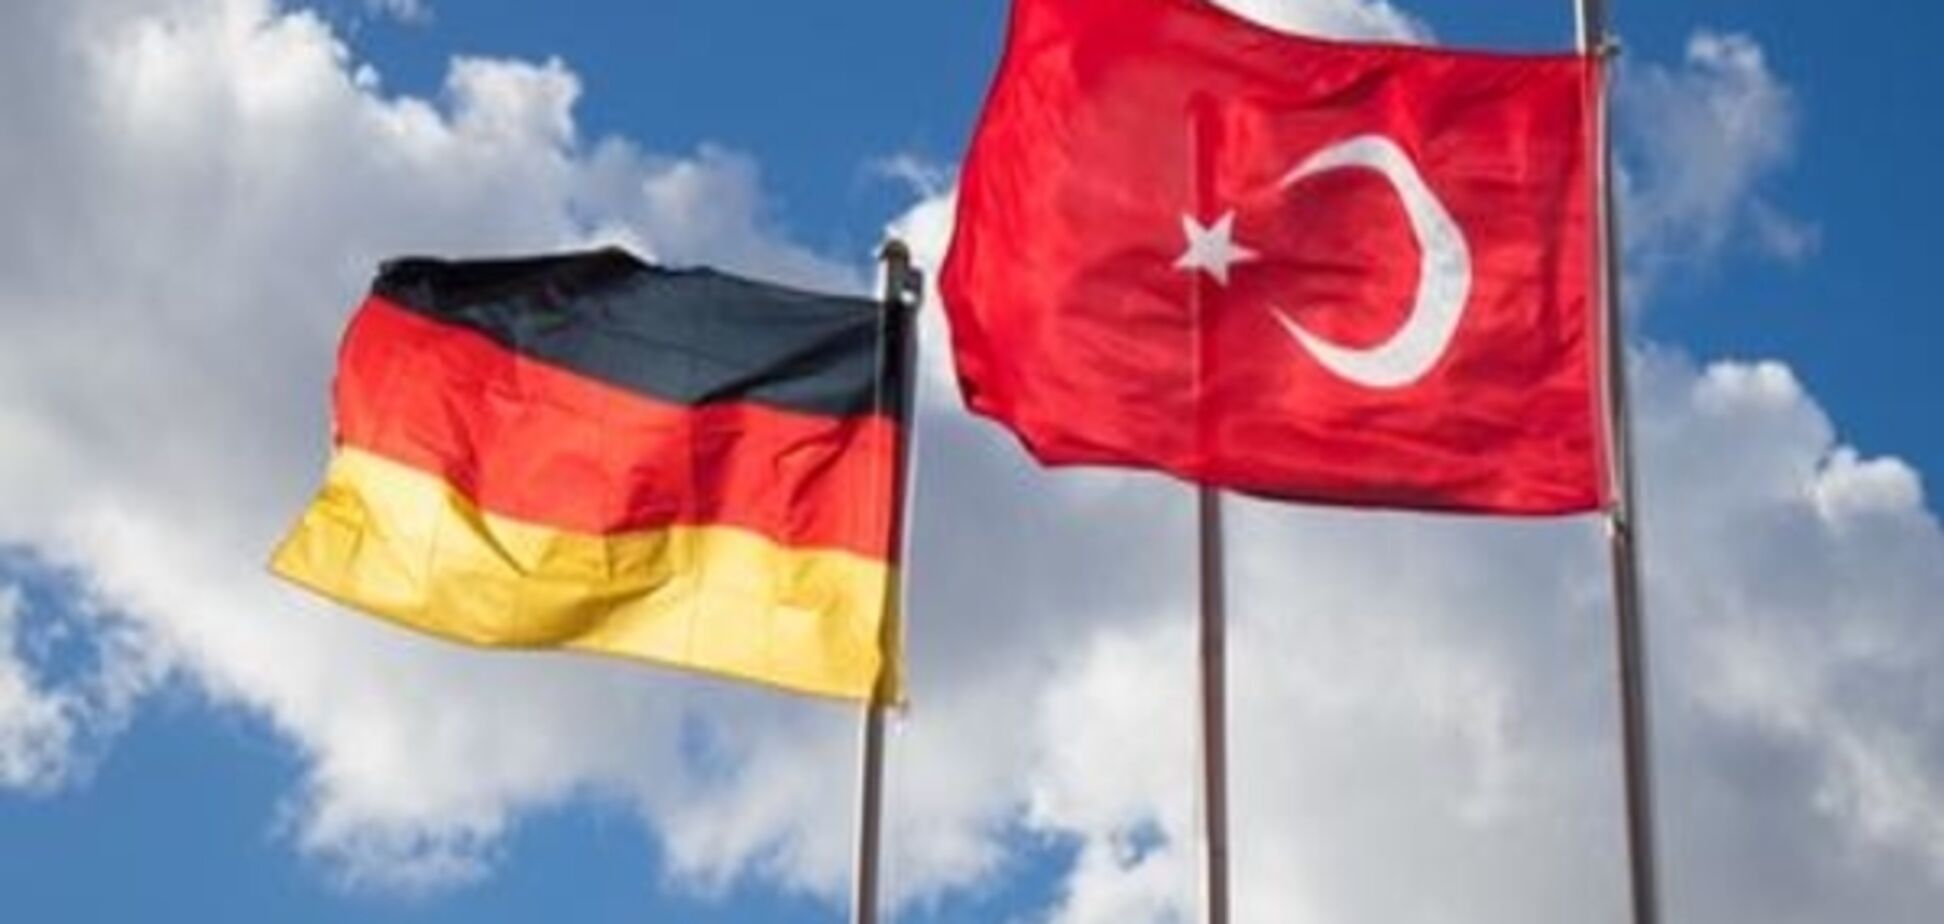 Коментар: Референдум у Туреччині має розбуркати Німеччину